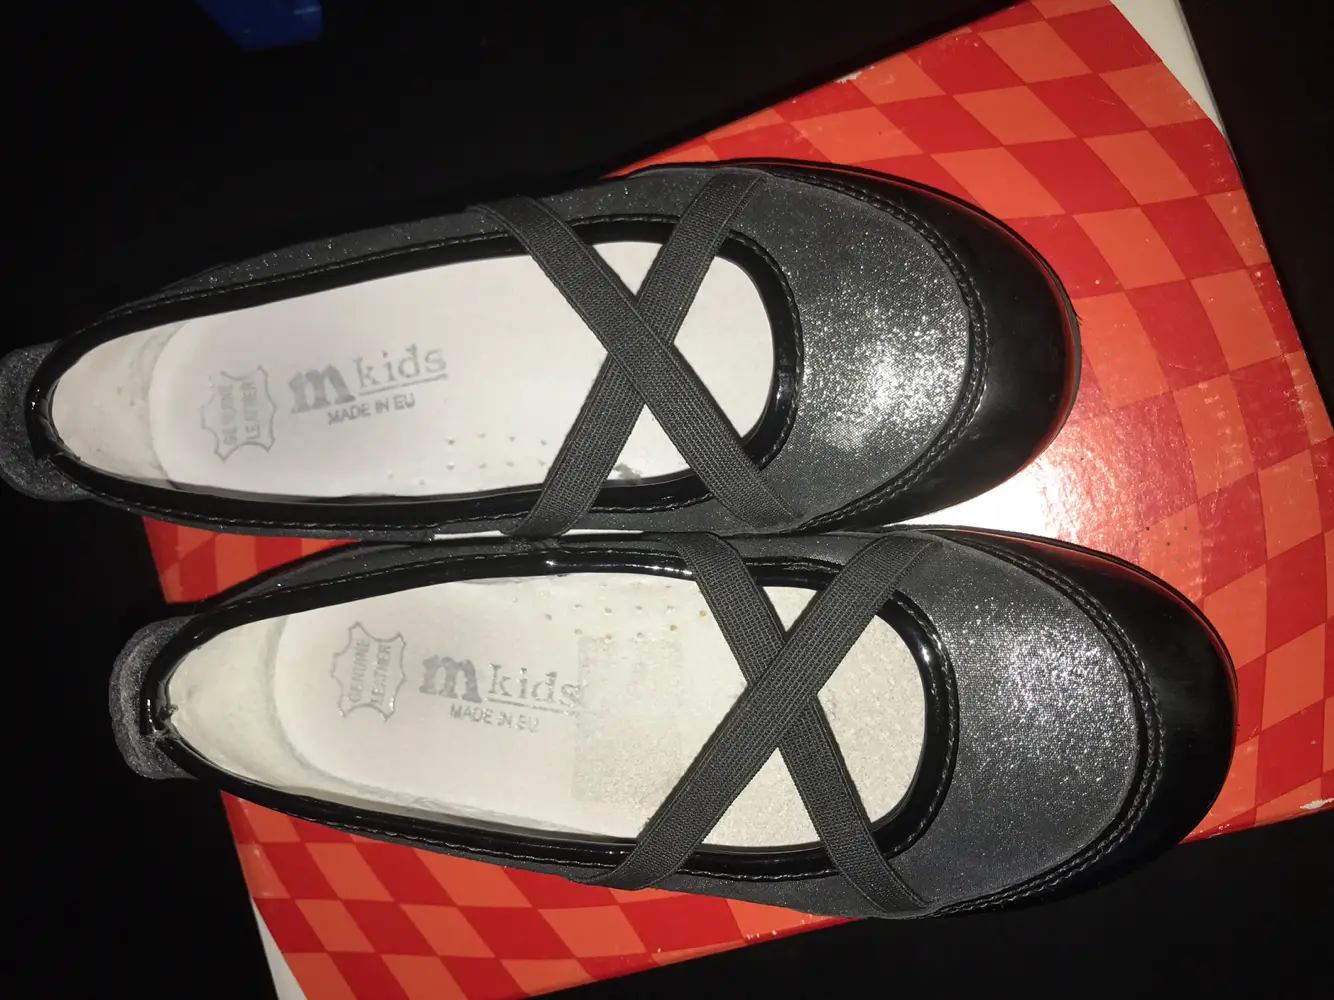 Nye sko sølv grå sort sandaler sandaler 30